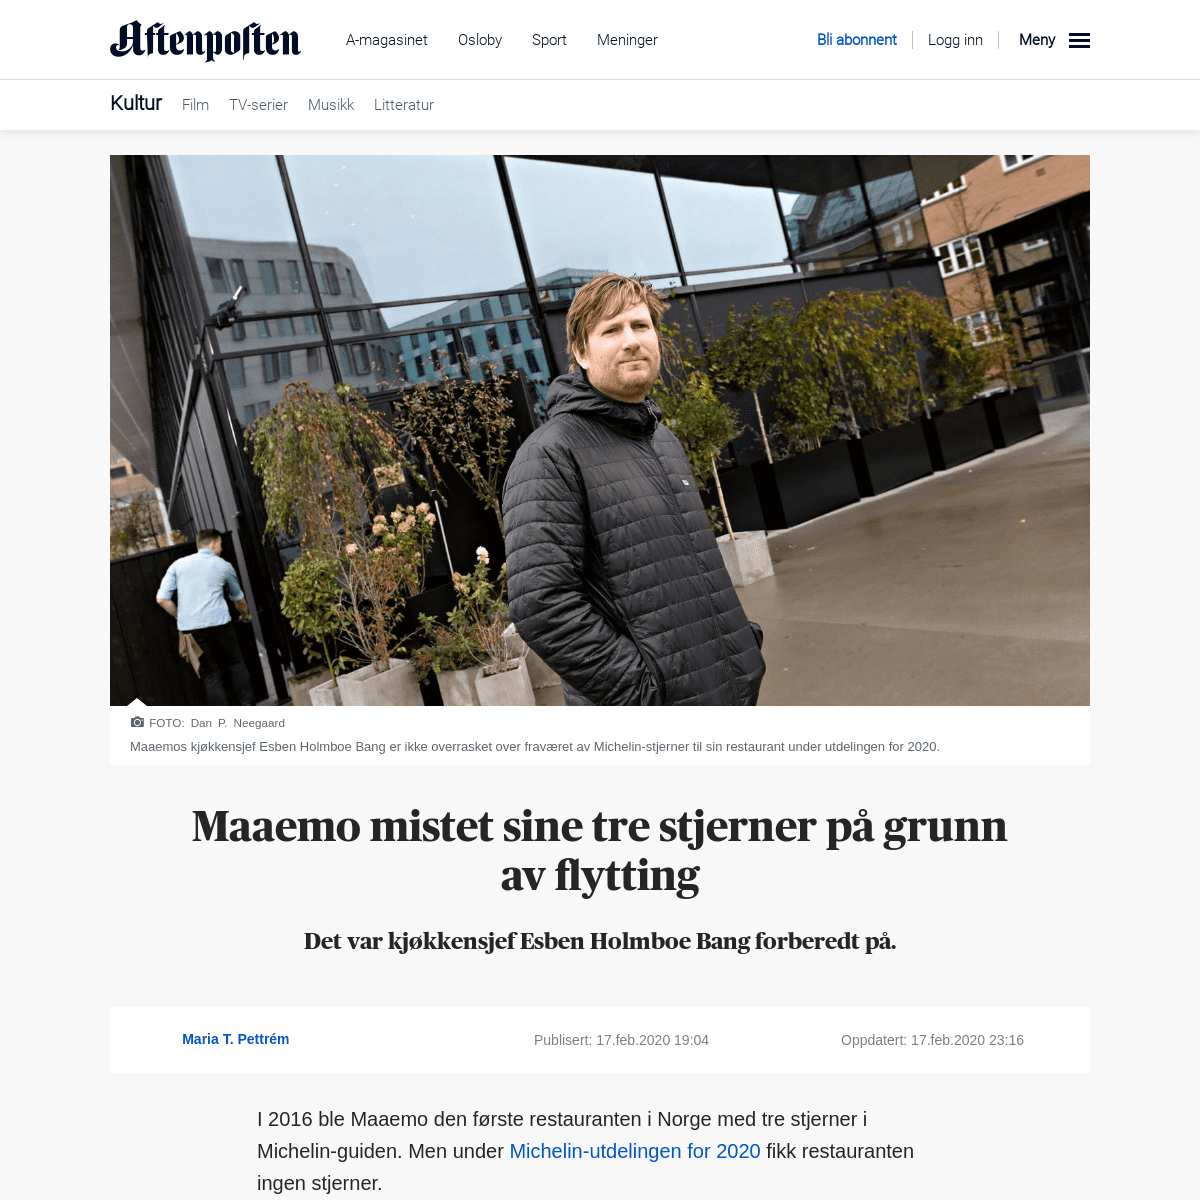 A complete backup of www.aftenposten.no/kultur/i/Jo4vJ6/Maaemo-mistet-sine-tre-stjerner-pa-grunn-av-flytting